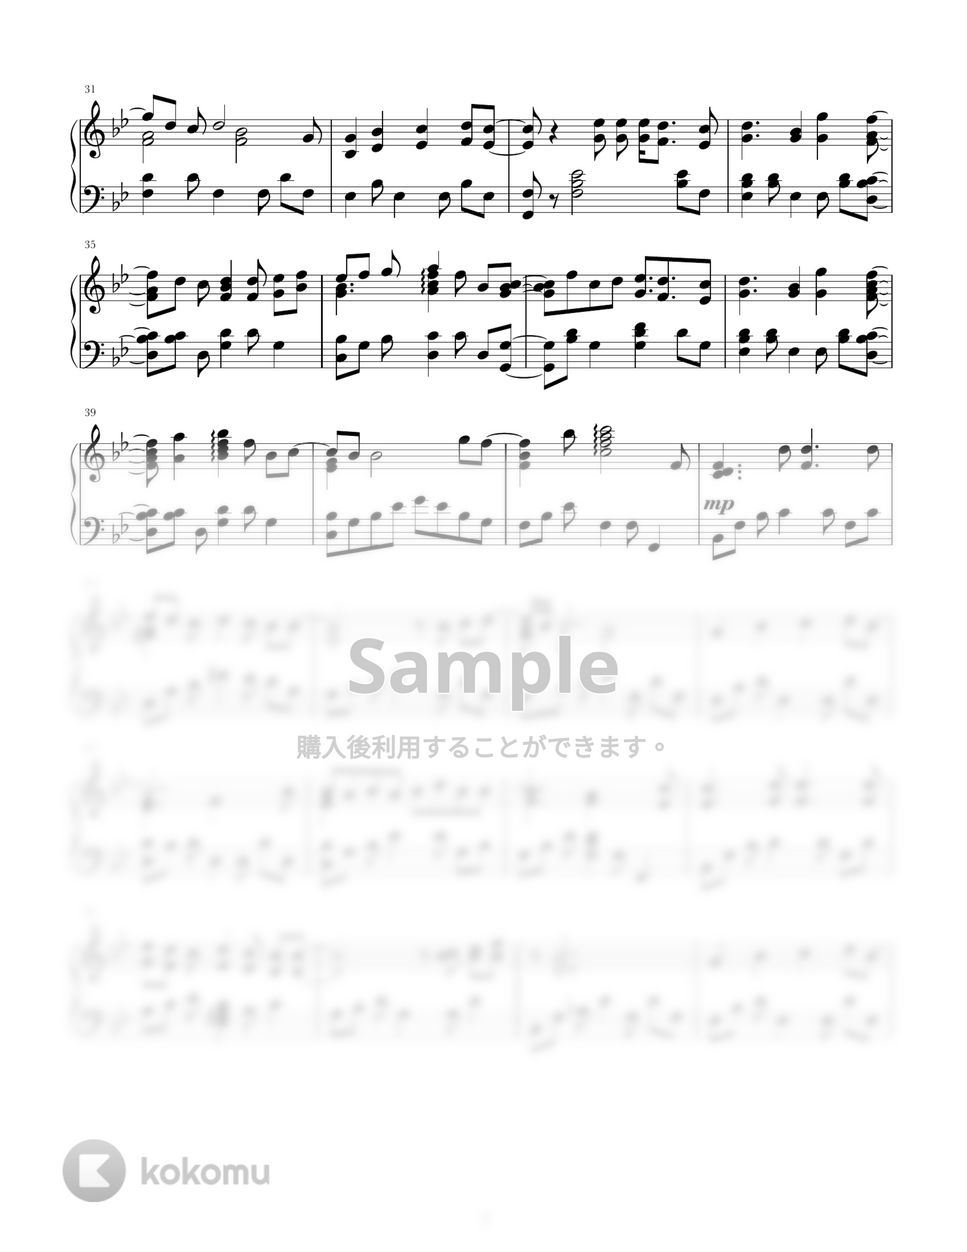 なにわ男子 - 魔法ヶ丘 (なにわ男子/魔法ヶ丘/ピアノ/ピアノソロ/1stLove/ジャニーズ/naniwadanshi) by pianokonoko